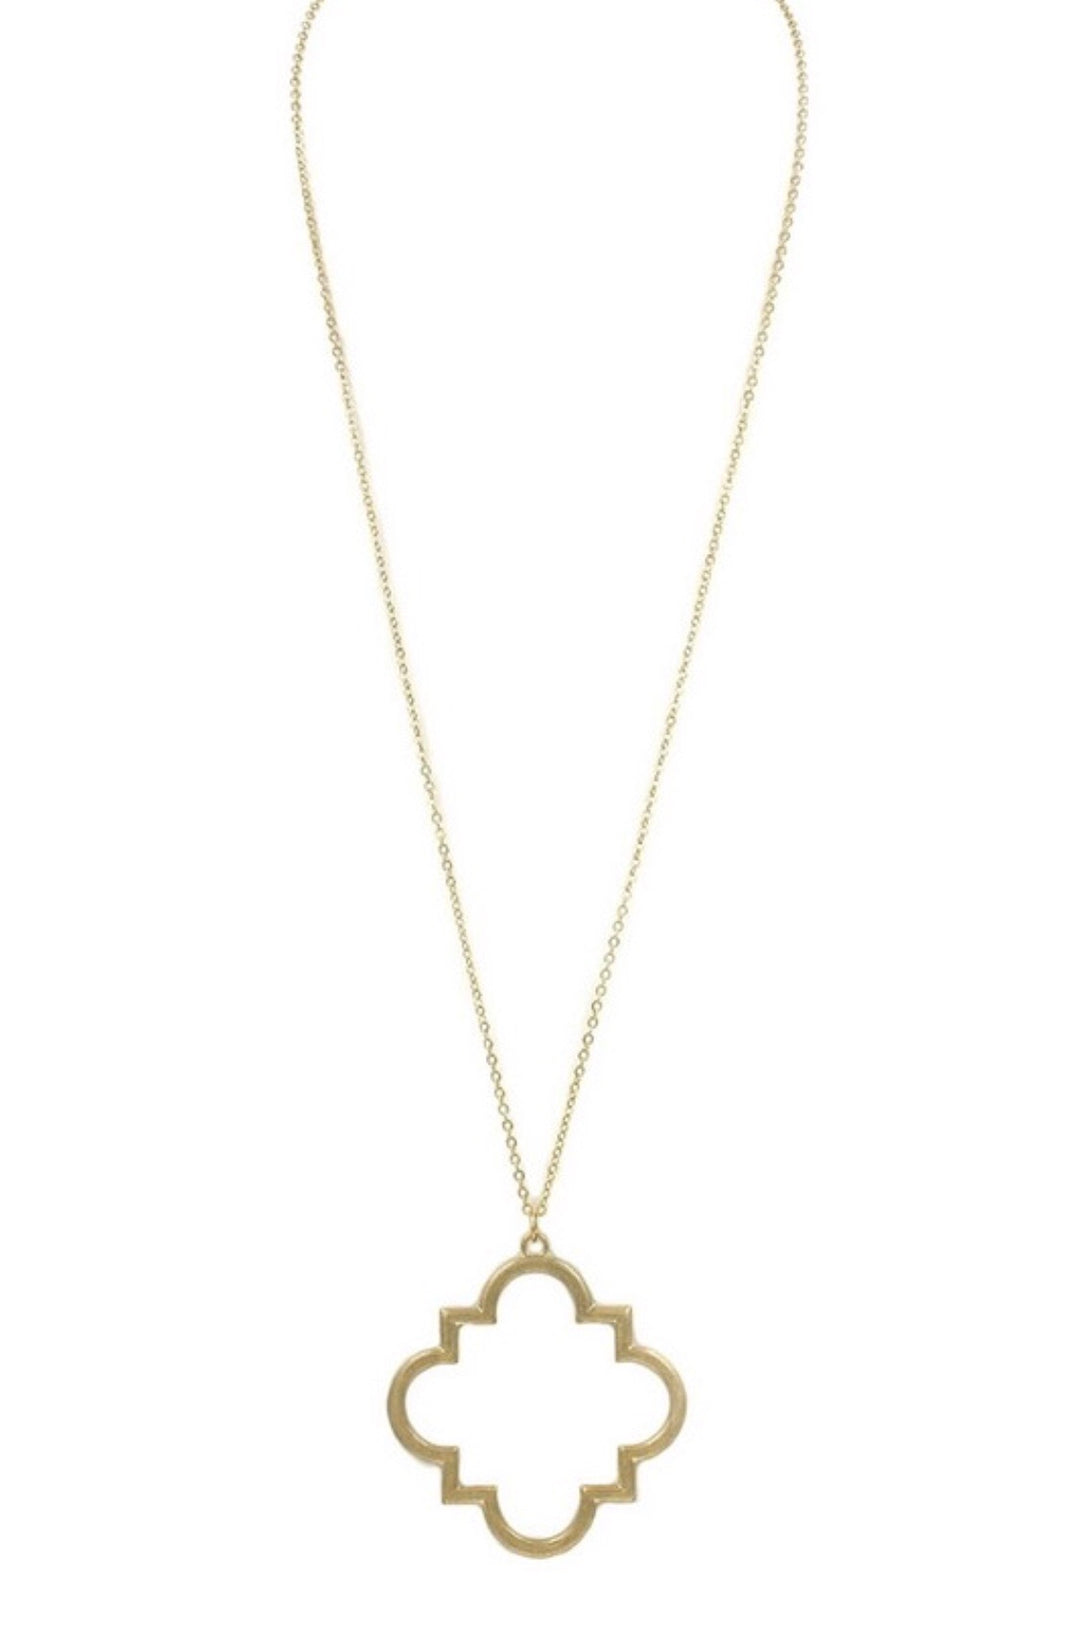 Quatrefoil Necklace - Gold